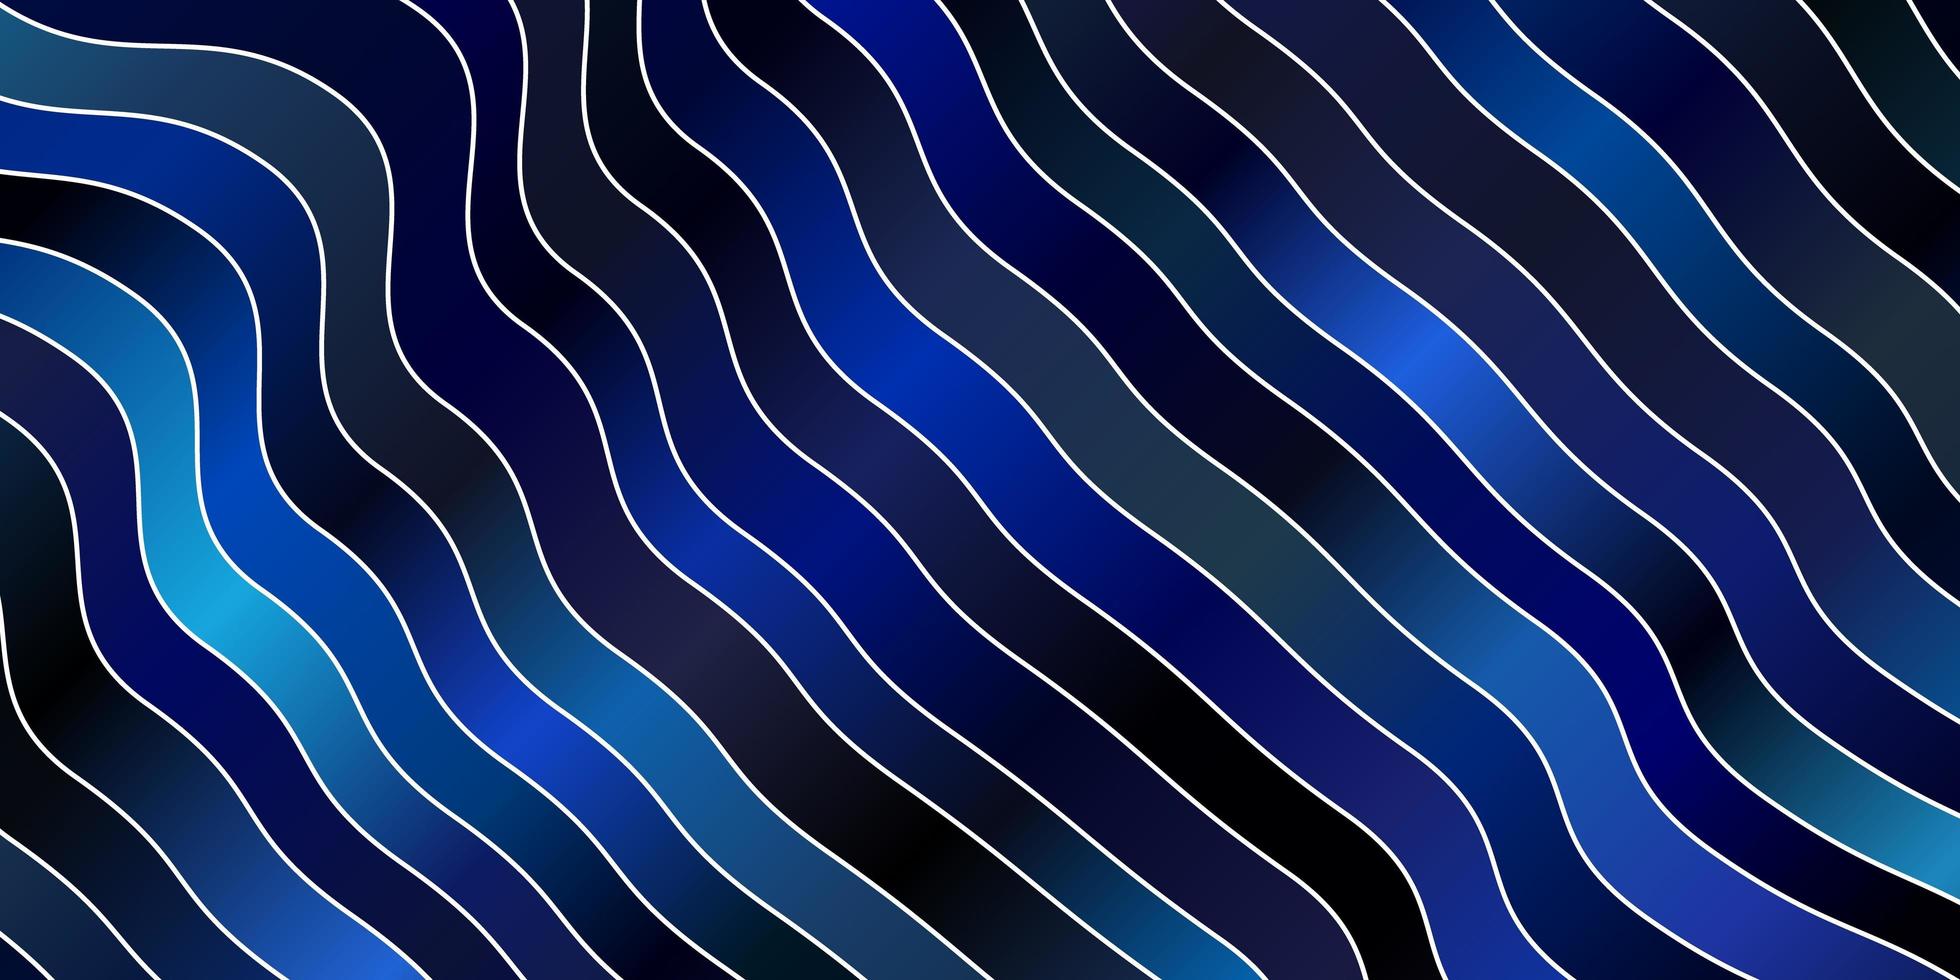 sfondo vettoriale blu scuro con arco circolare. campione luminoso con linee piegate colorate, forme. modello per libretti, volantini.